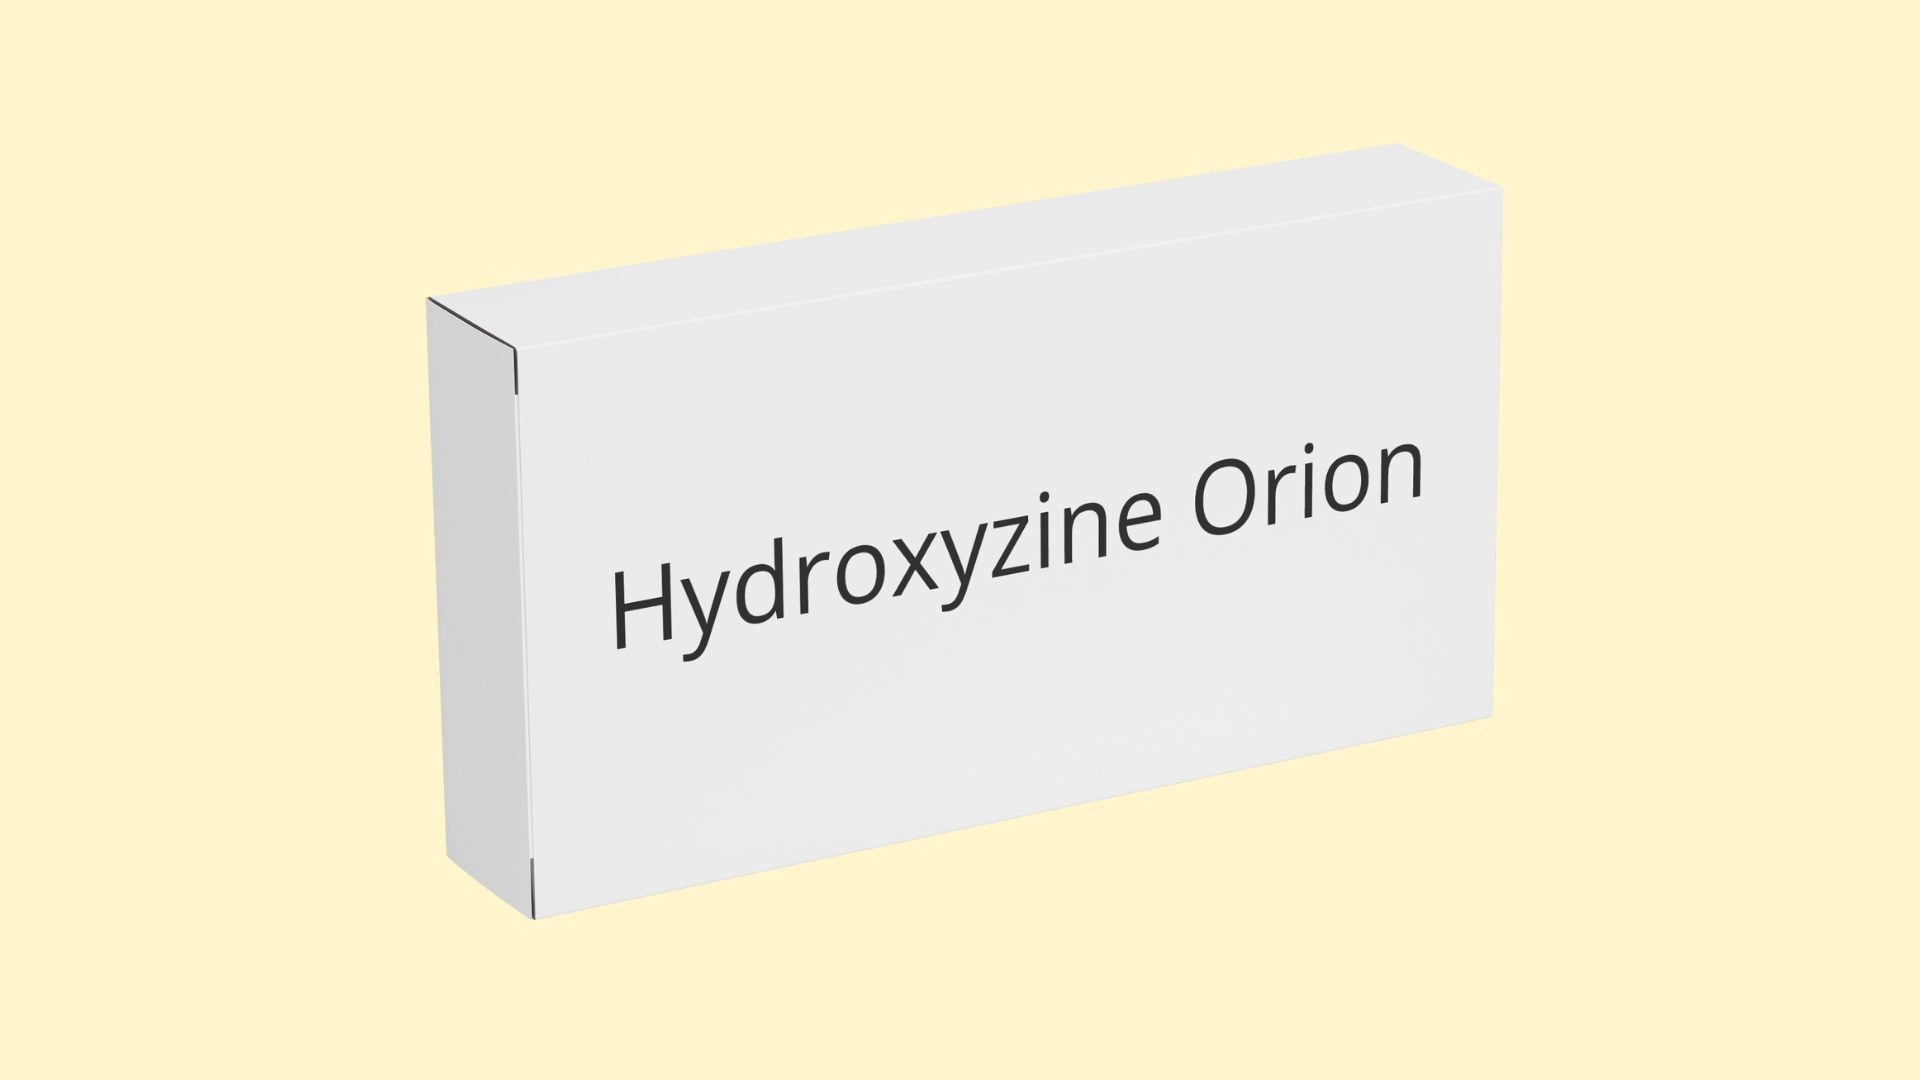 Hydroxyzine Orion   E recepta  recepta online z konsultacją | cena  dawkowanie  przeciwwskazania